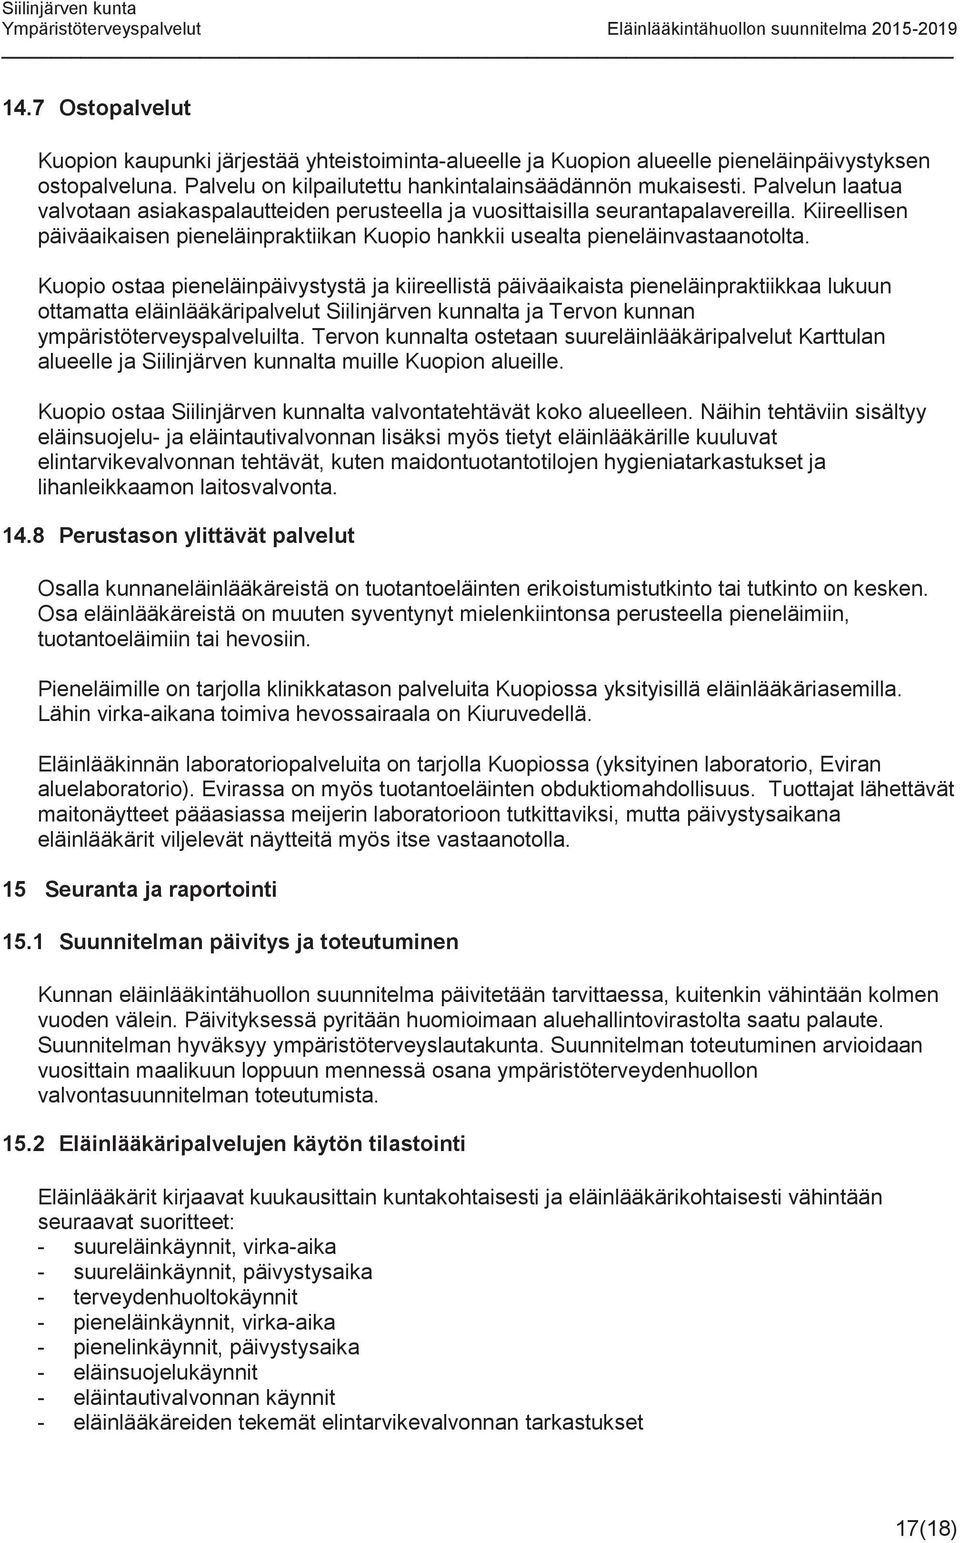 Kuopio ostaa pieneläinpäivystystä ja kiireellistä päiväaikaista pieneläinpraktiikkaa lukuun ottamatta eläinlääkäripalvelut Siilinjärven kunnalta ja Tervon kunnan ympäristöterveyspalveluilta.